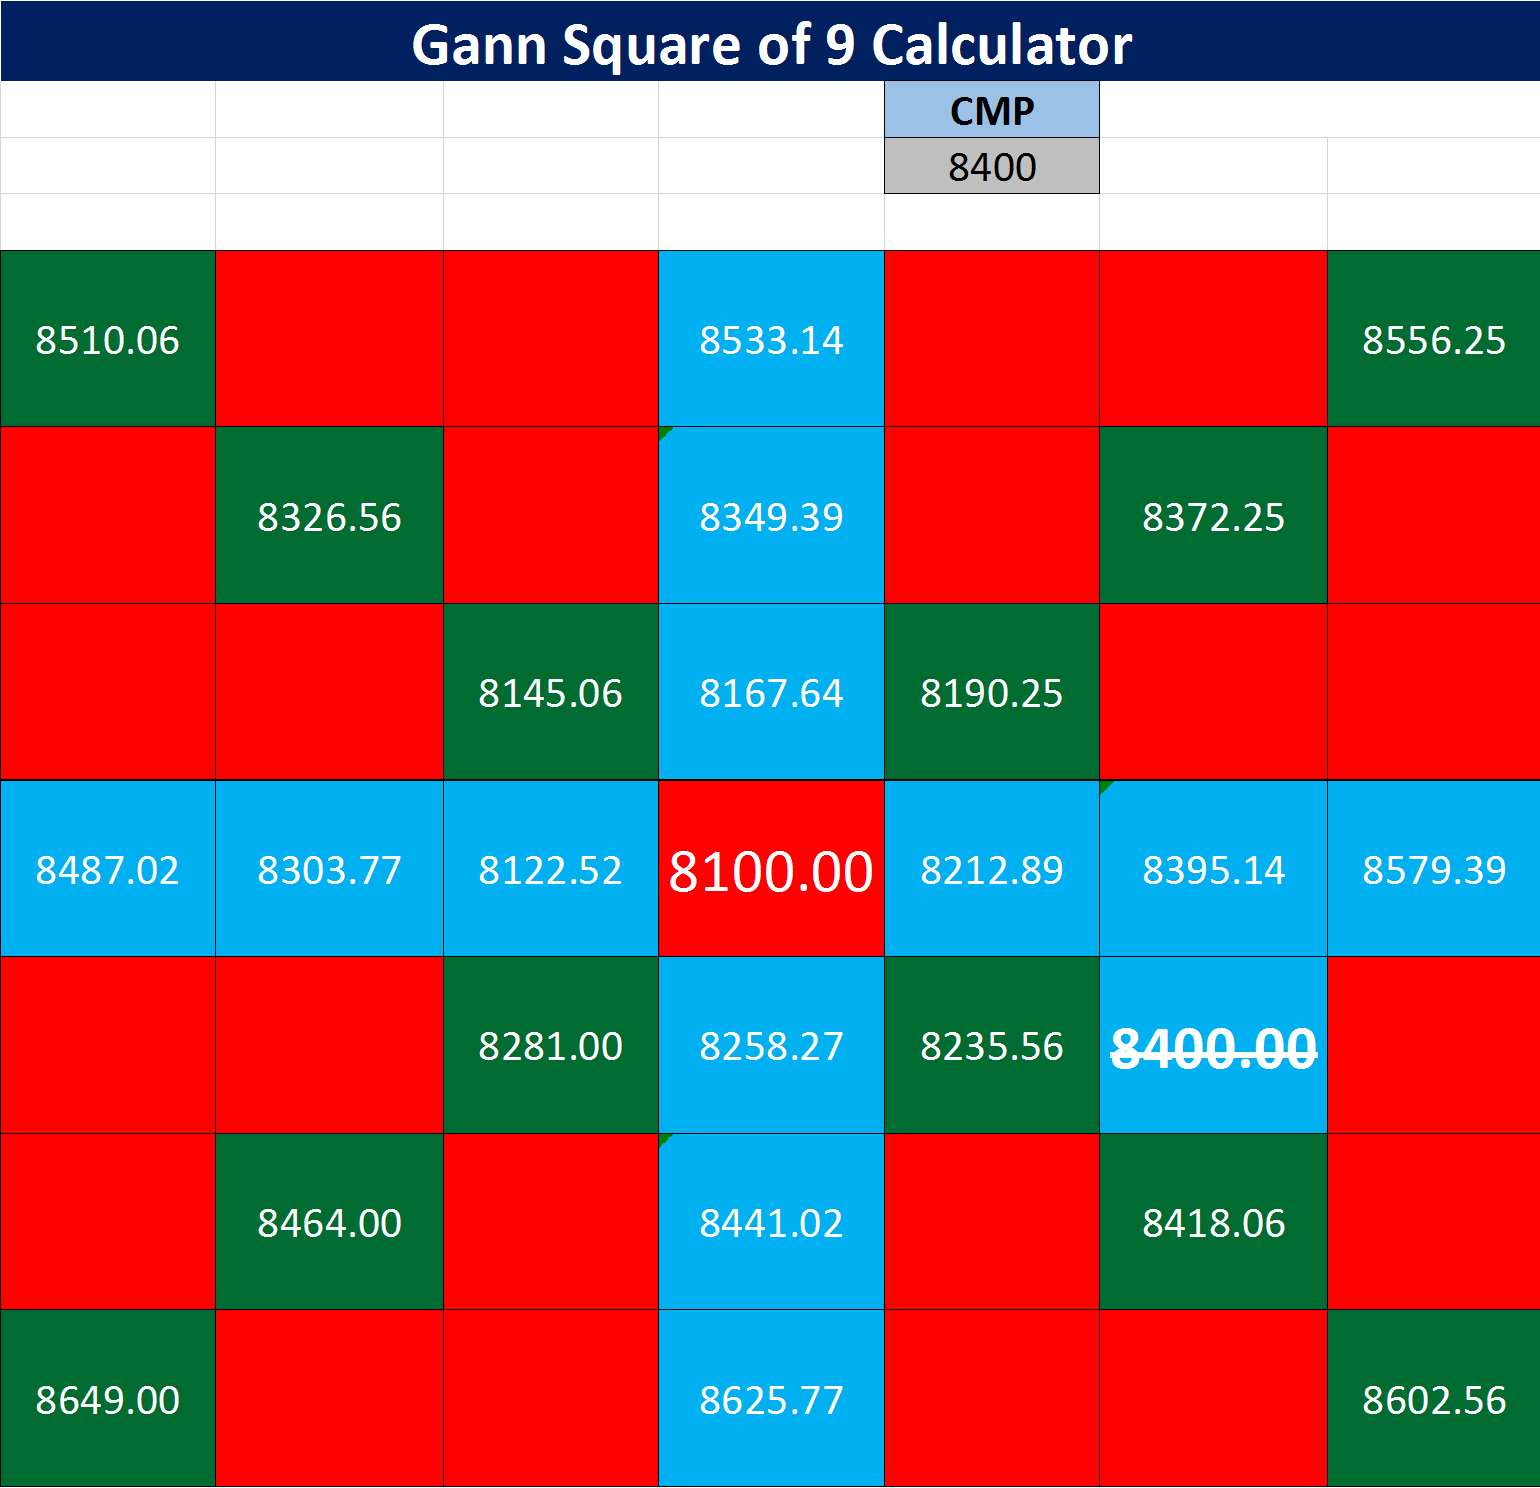 Gann-Square-of-9-Calculato